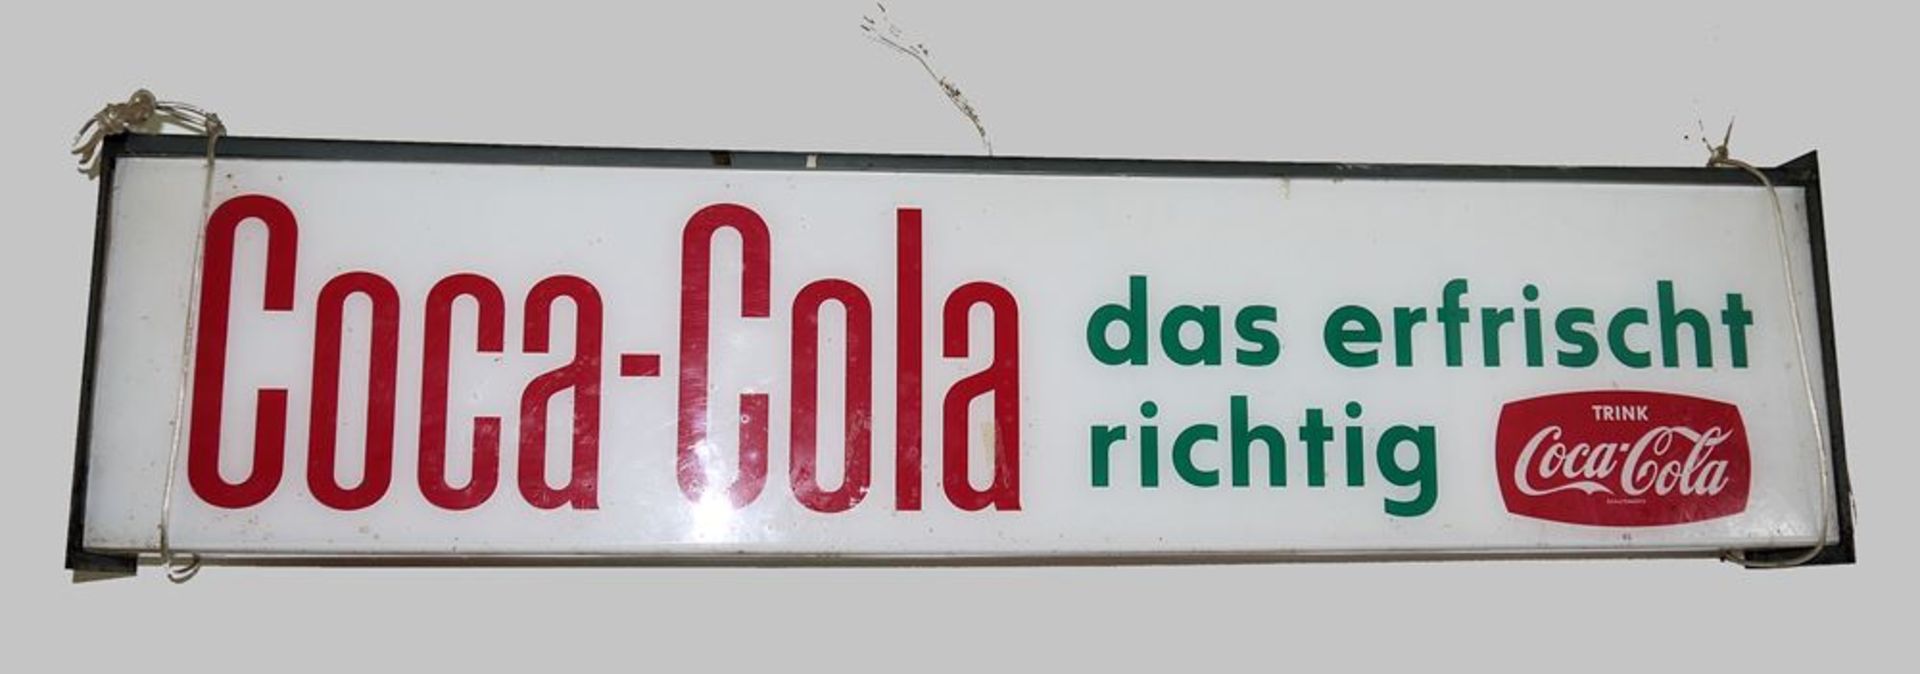 Coca-Cola Leuchtreklame & Hofbräuhaus München Bierkrug als Werbeobjekt, 60er-Ja - Image 2 of 2